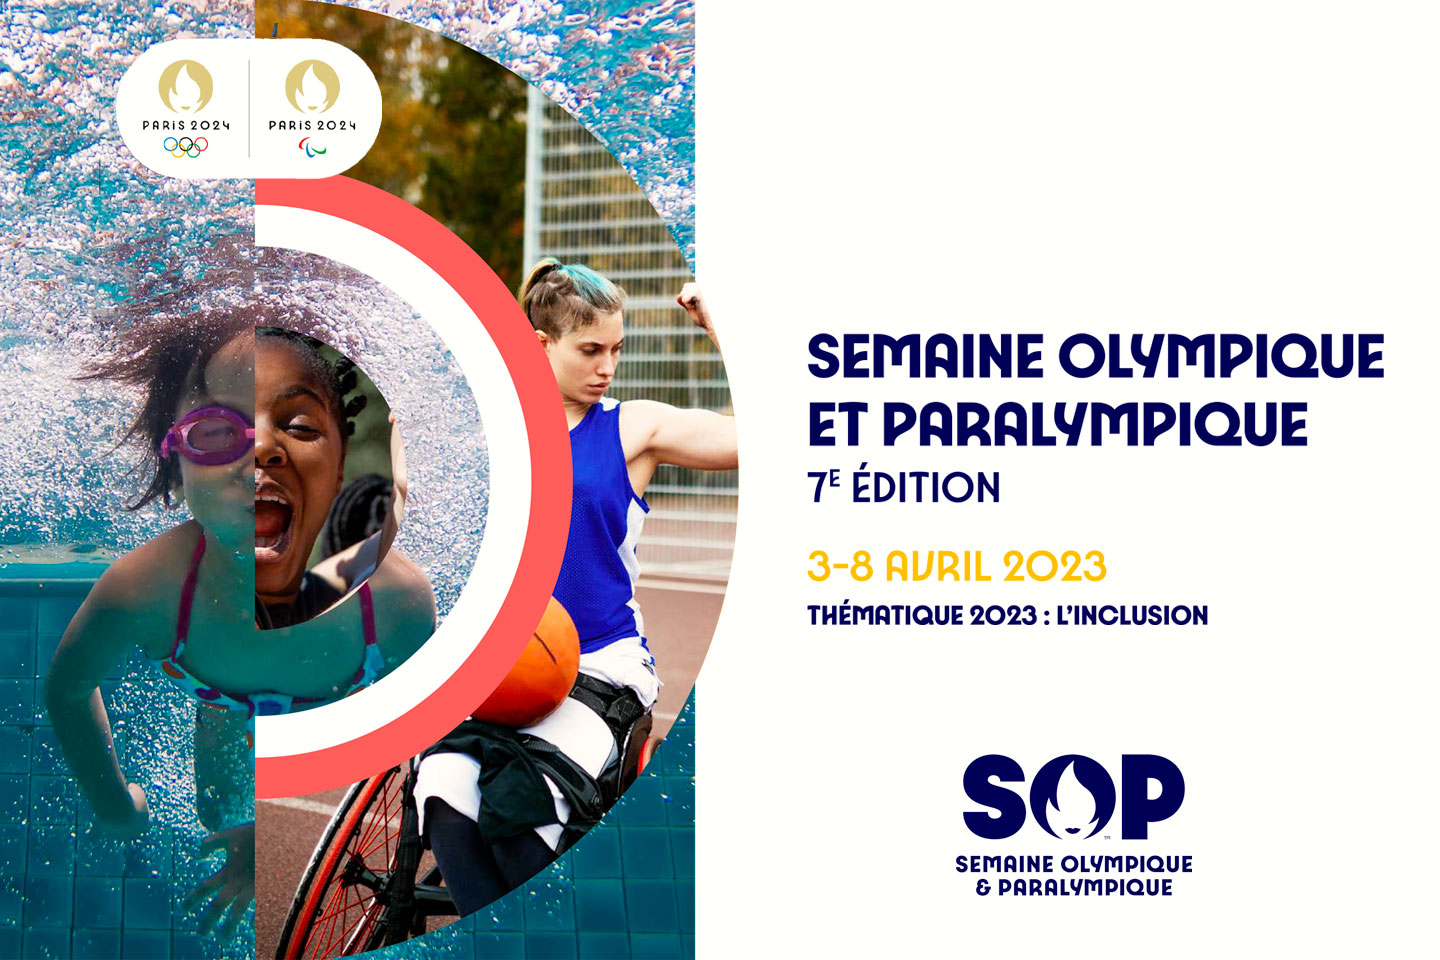 Semaine Olympique et Paralympique 2023